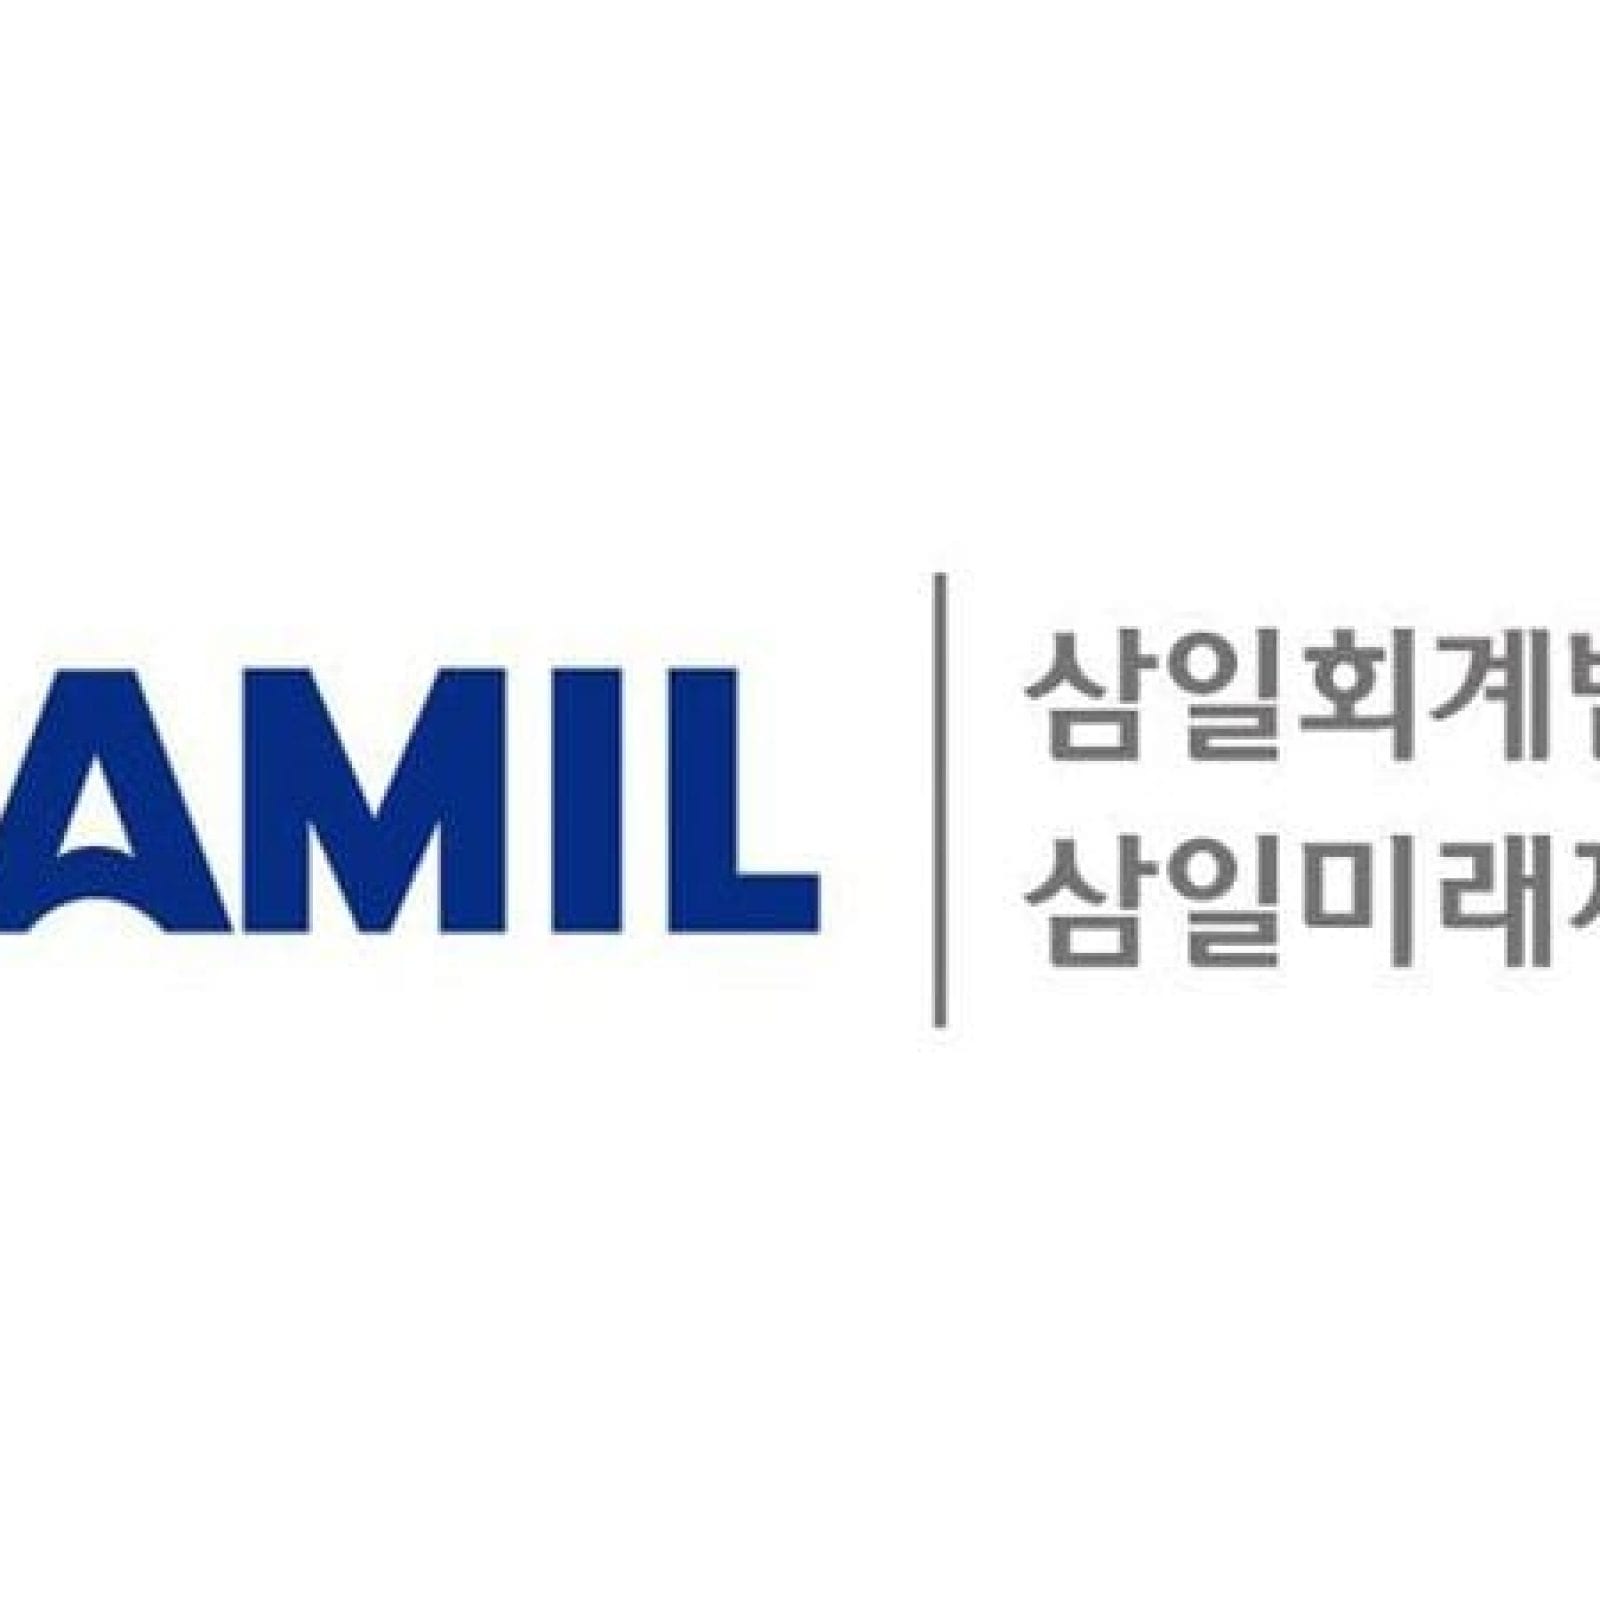 Samil PWC | Yongsan-gu, Seoul